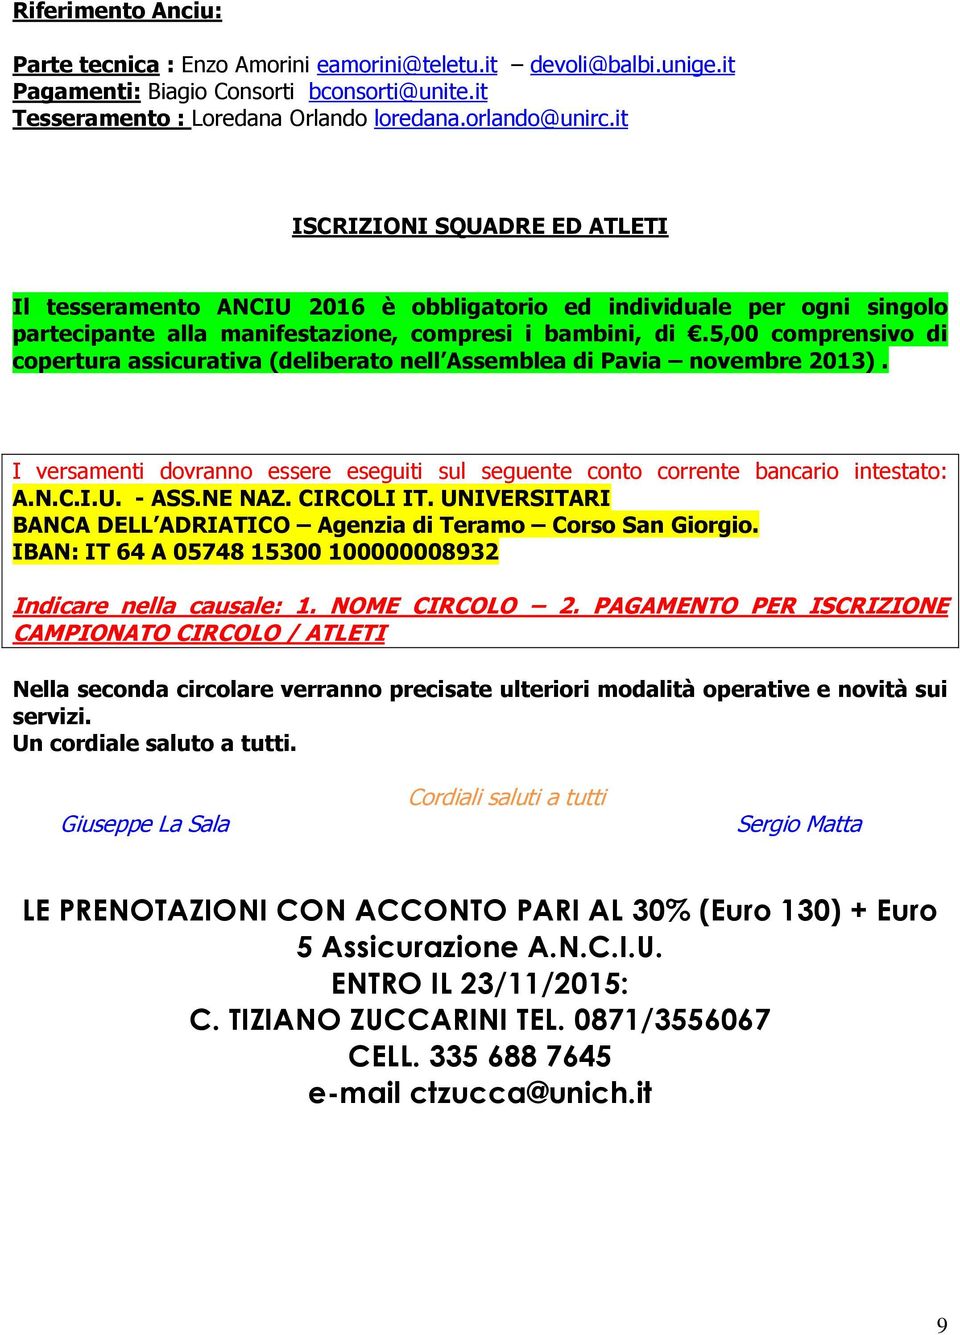 5,00 comprensivo di copertura assicurativa (deliberato nell Assemblea di Pavia novembre 2013). I versamenti dovranno essere eseguiti sul seguente conto corrente bancario intestato: A.N.C.I.U. - ASS.